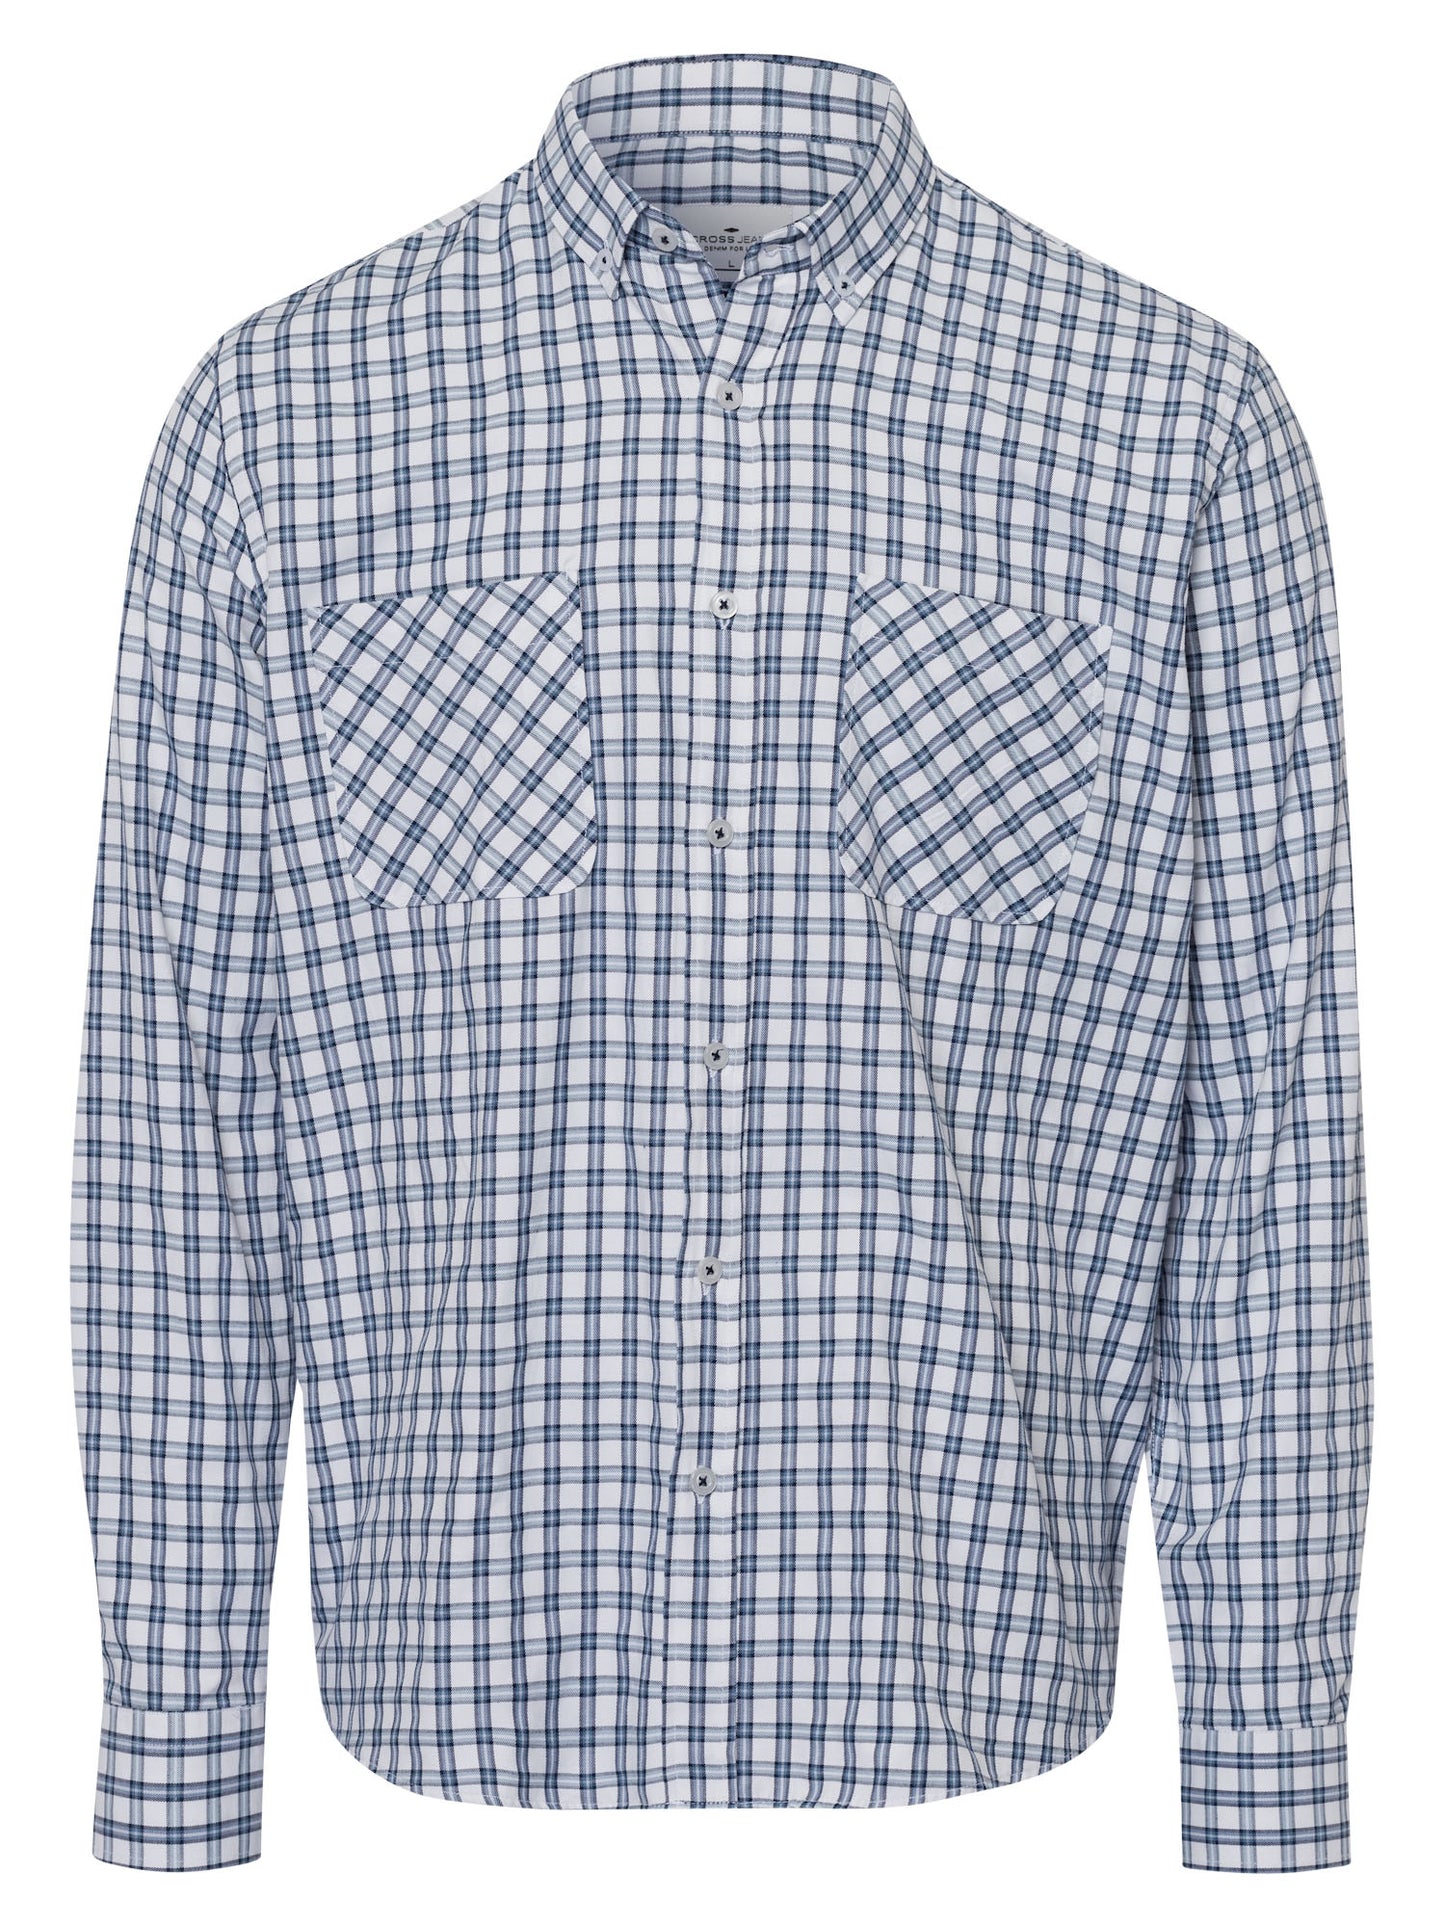 Men's regular long-sleeved shirt checked blue.